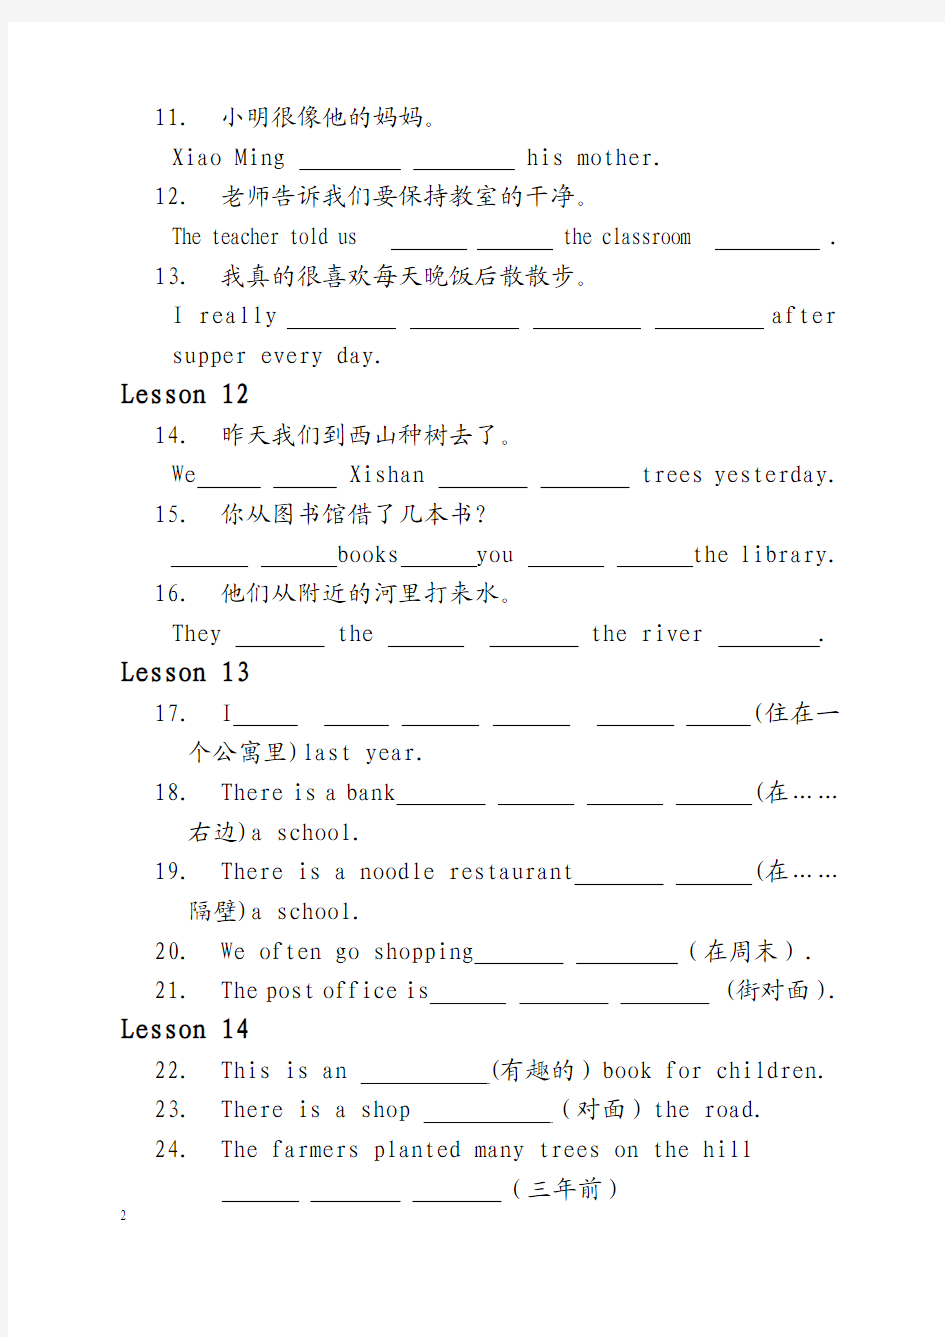 天津市和平区小学六年级英语大本下册1-6翻译句子